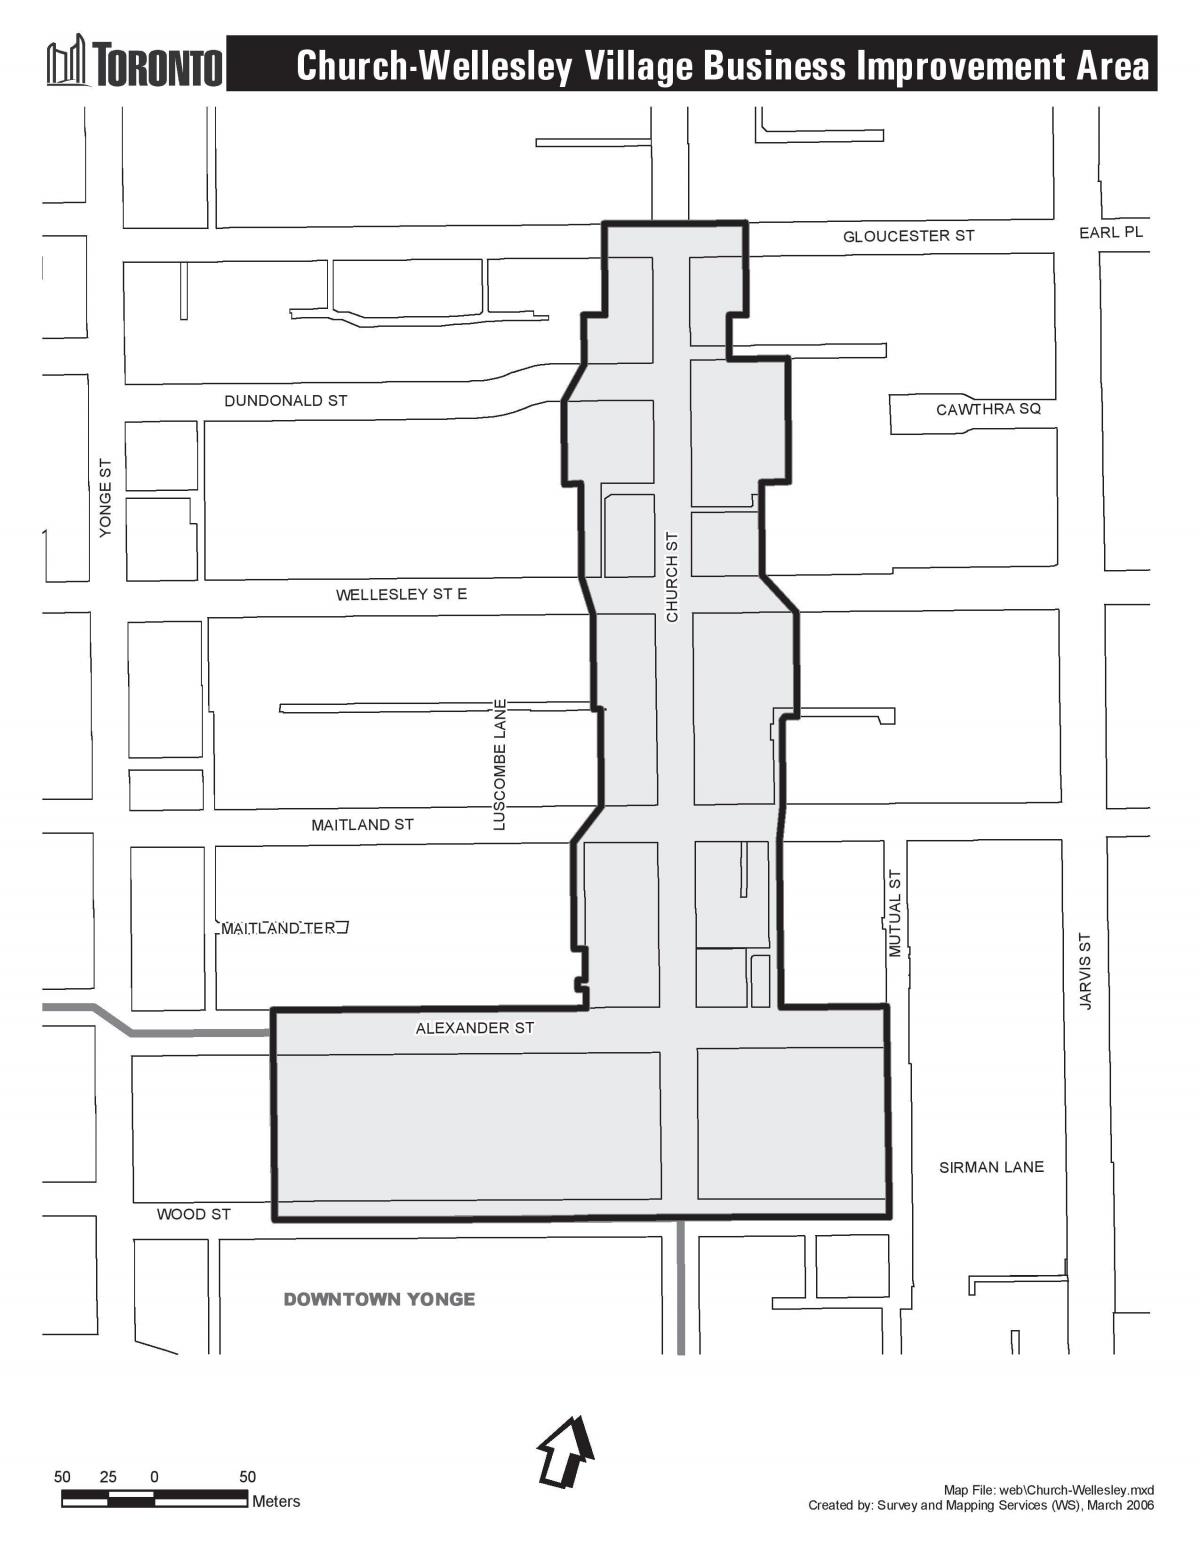 Kort over Kirke-Wellesley Landsby business Forbedring Området Toronto